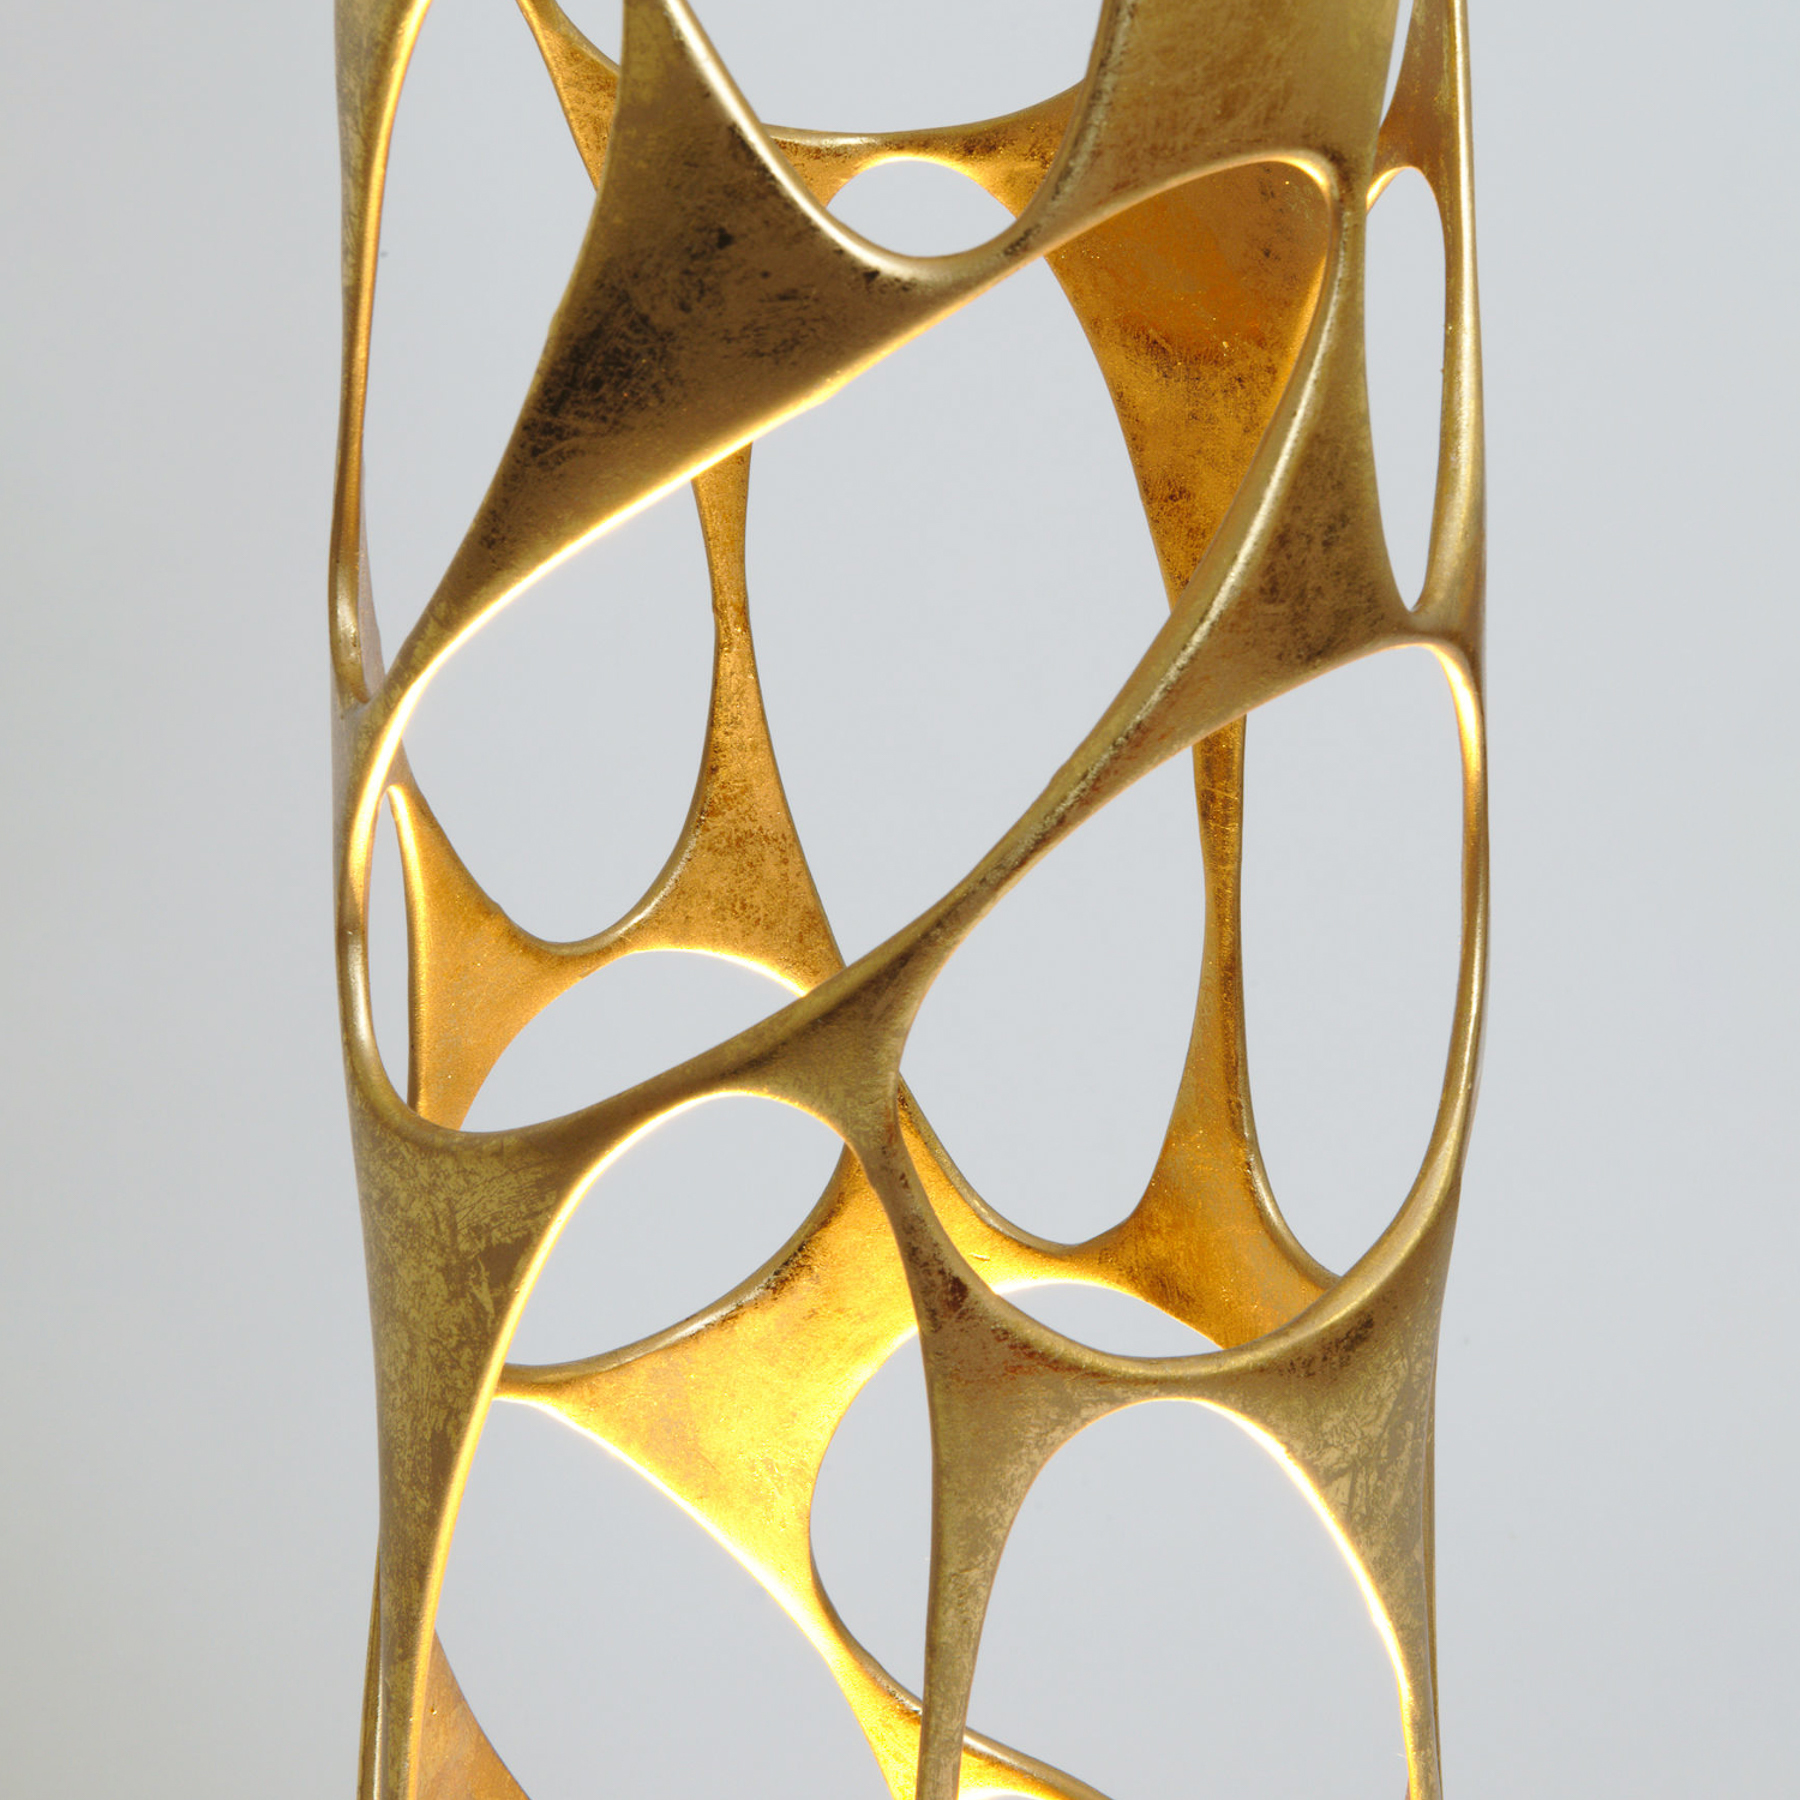 Talismano állólámpa, arany színű, 176 cm magas, vasból készült